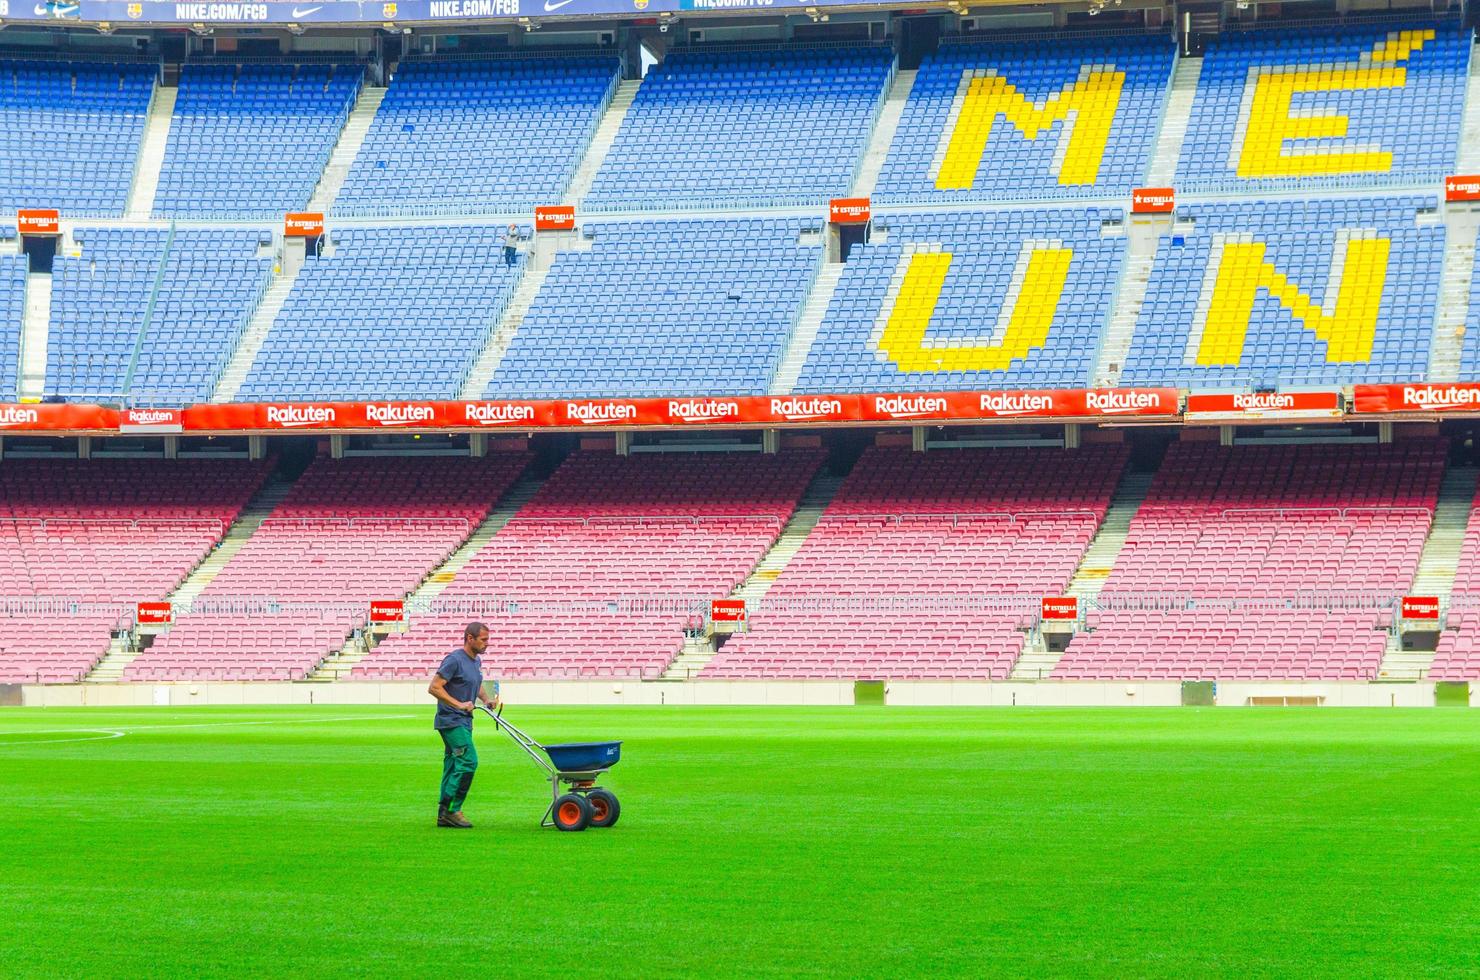 barcelone, espagne, 14 mars 2019 le travailleur sème de l'herbe avec un épandeur d'engrais sur la pelouse du champ vert du camp nou, les tribunes se dressent en arrière-plan. stade du club de football barcelone photo